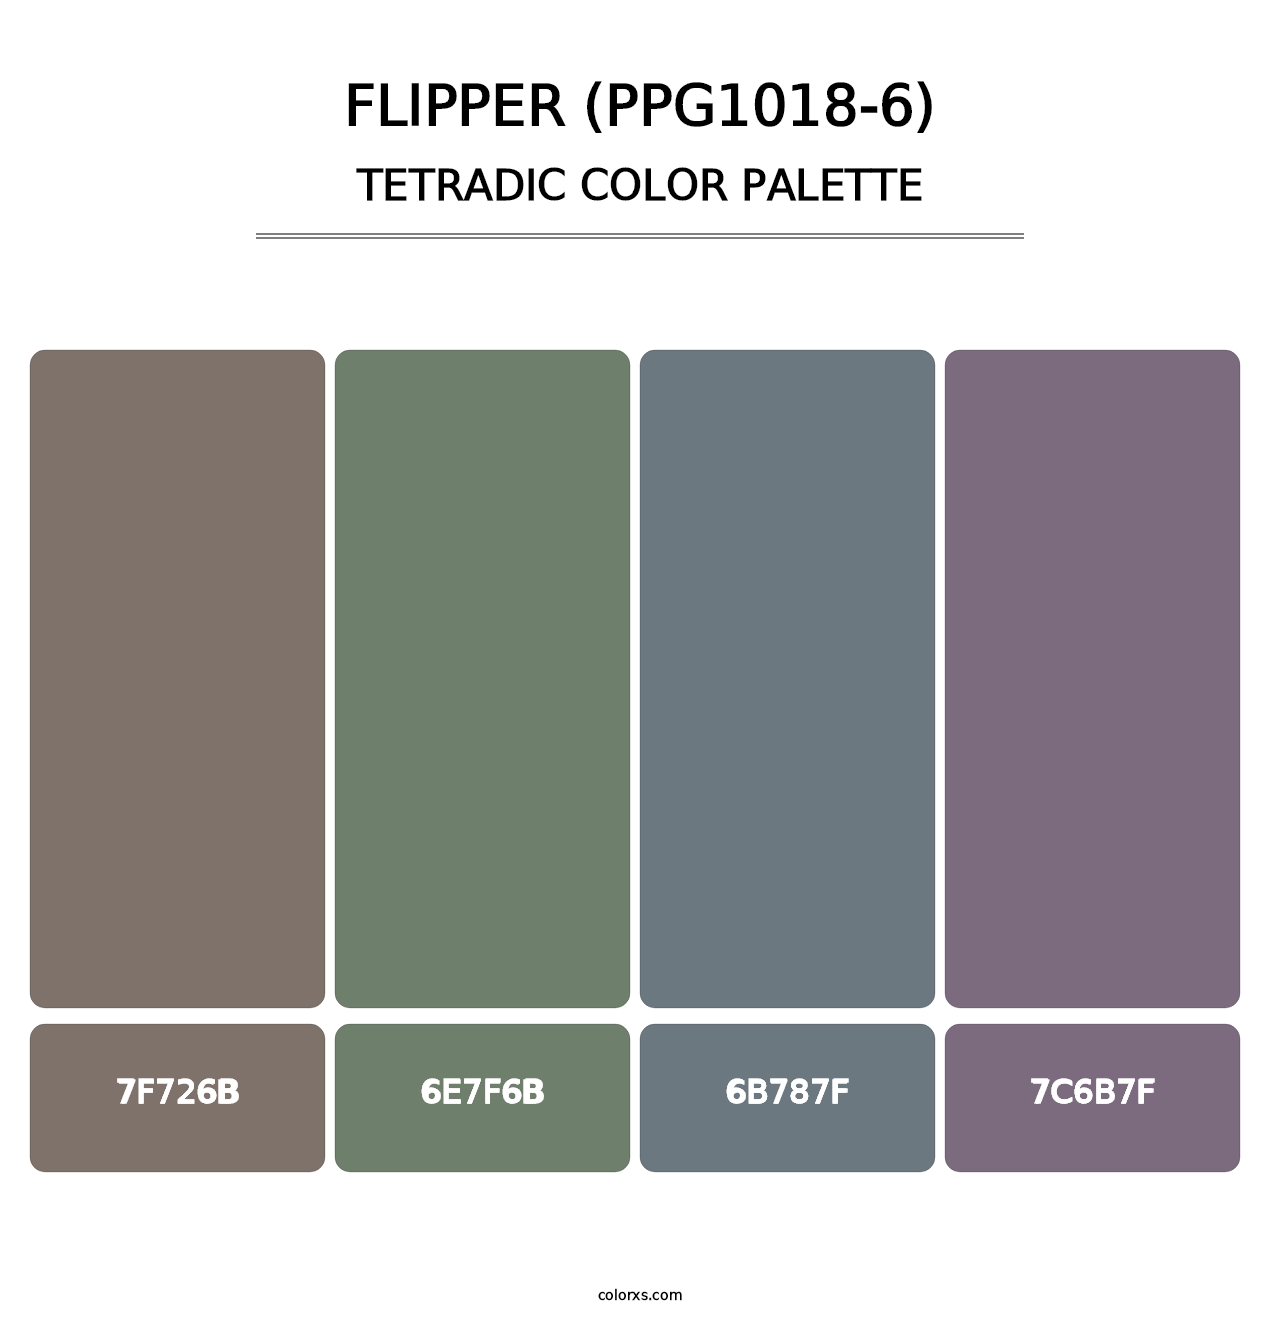 Flipper (PPG1018-6) - Tetradic Color Palette